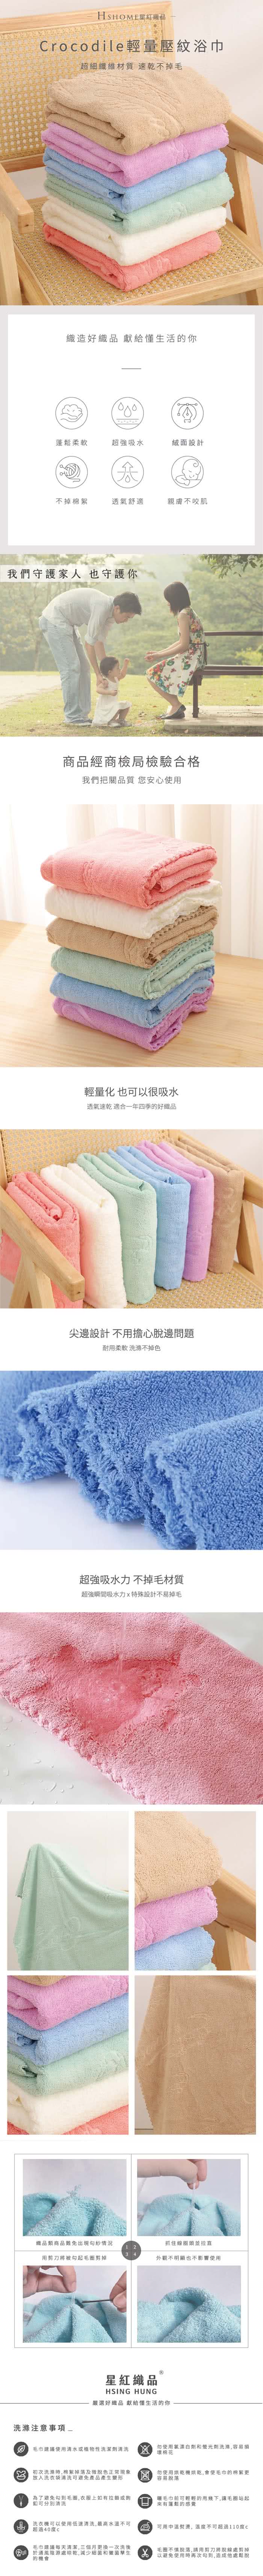 星紅織品 鱷魚正版授權輕量壓紋浴巾-18入組(藍/粉/綠/紫